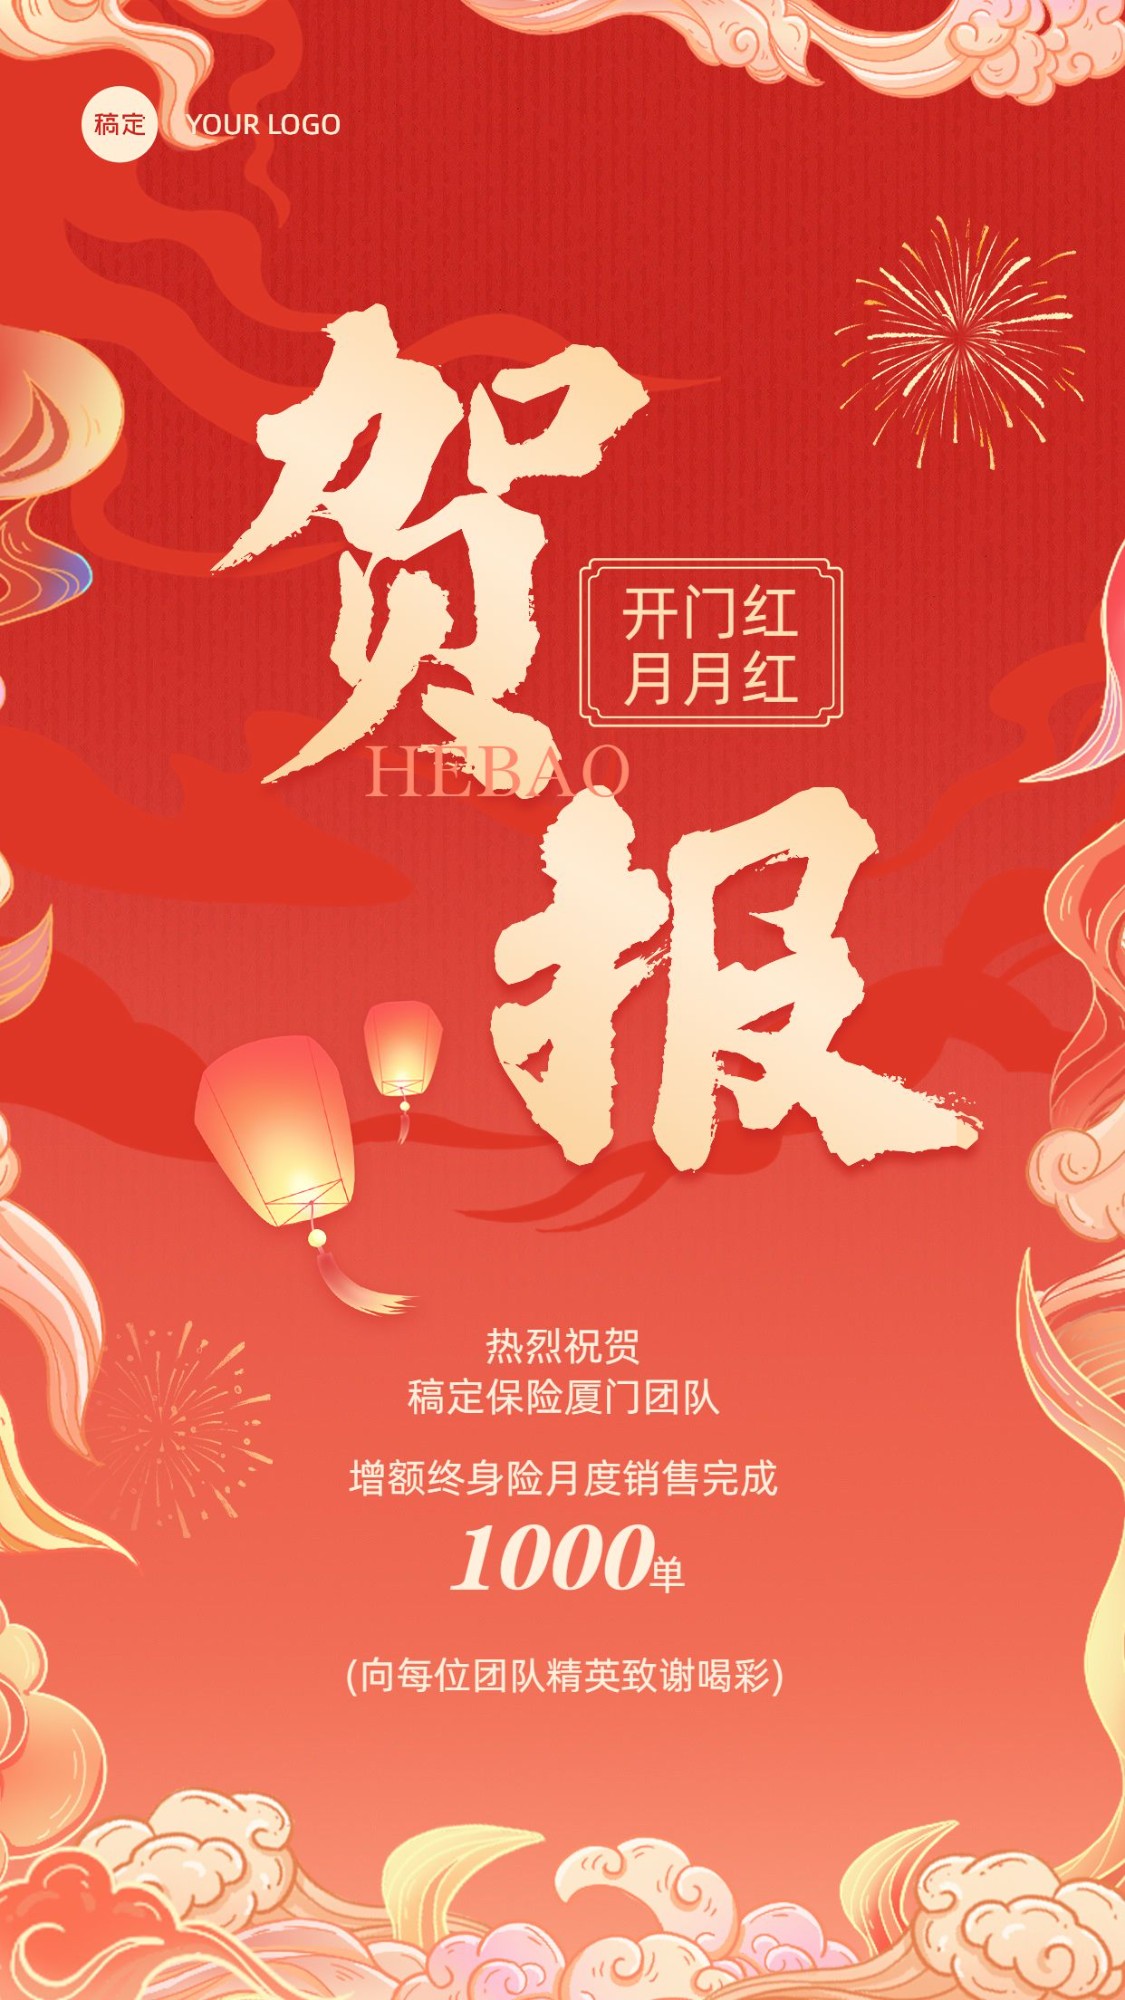 金融保险开门红销售业绩表彰喜报贺报中国风插画手机海报